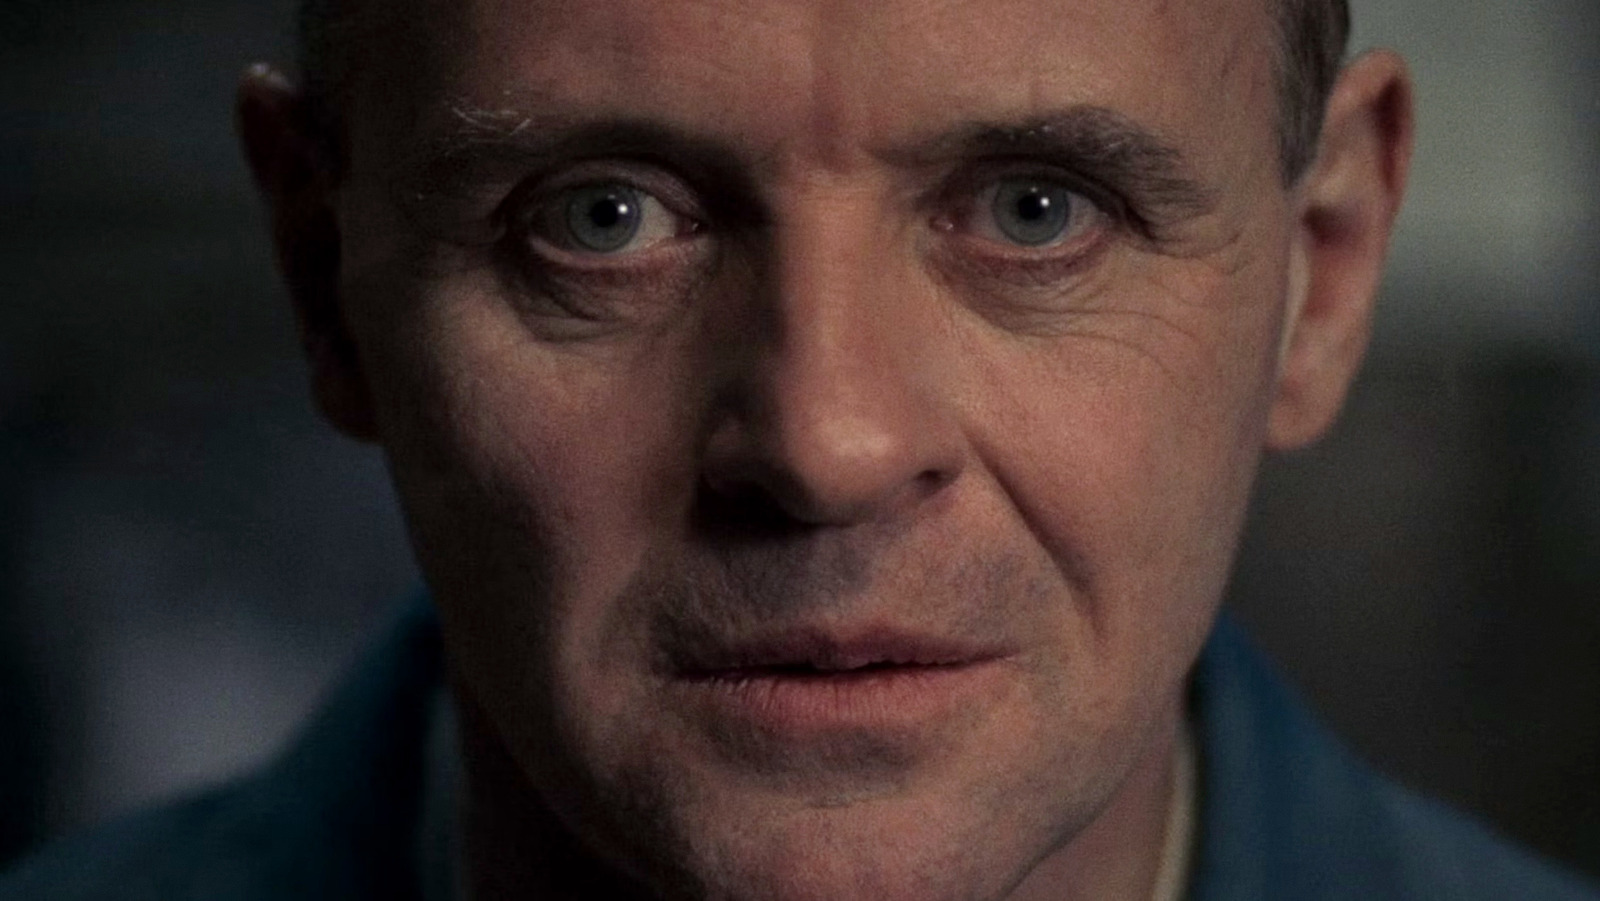 Le bon ordre pour regarder chaque film d’Hannibal Lecter